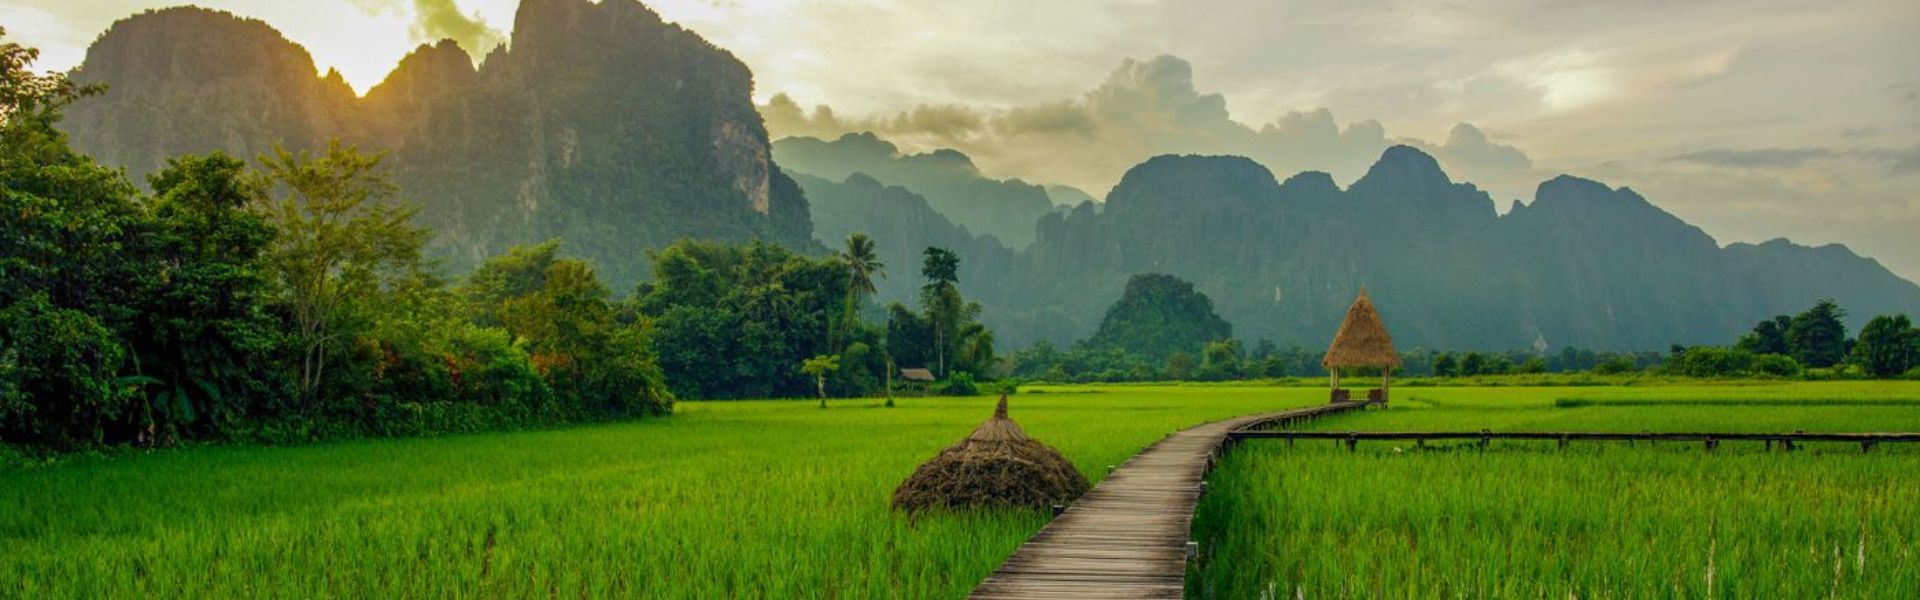 Vang Vieng - Consejos de viaje | Guía de viajes a Laos